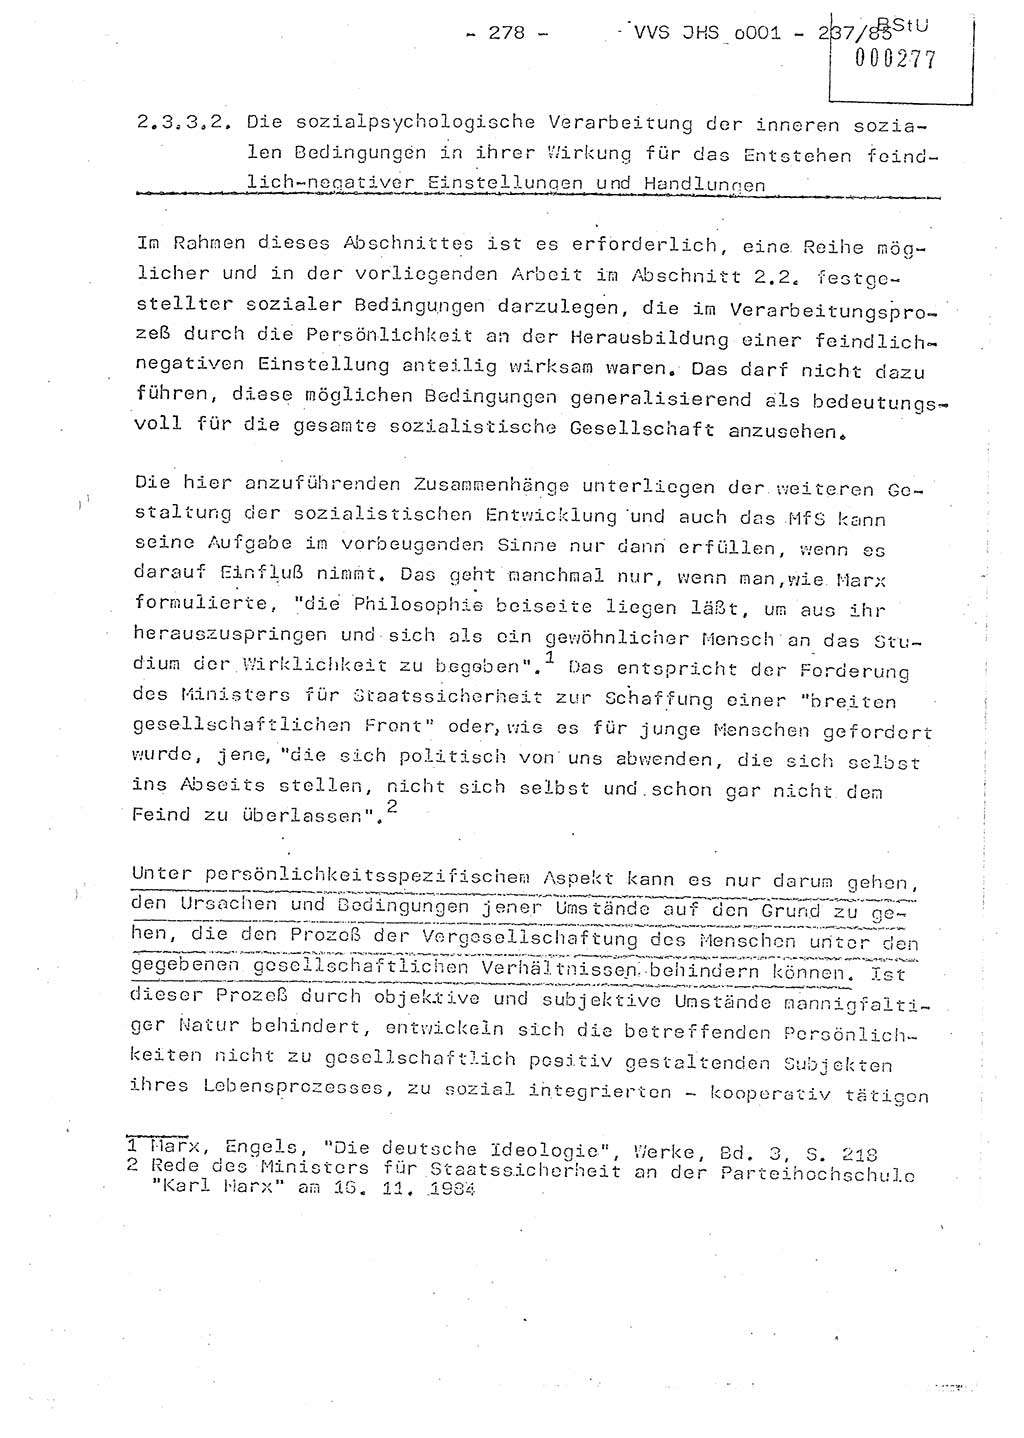 Dissertation Oberstleutnant Peter Jakulski (JHS), Oberstleutnat Christian Rudolph (HA Ⅸ), Major Horst Böttger (ZMD), Major Wolfgang Grüneberg (JHS), Major Albert Meutsch (JHS), Ministerium für Staatssicherheit (MfS) [Deutsche Demokratische Republik (DDR)], Juristische Hochschule (JHS), Vertrauliche Verschlußsache (VVS) o001-237/85, Potsdam 1985, Seite 278 (Diss. MfS DDR JHS VVS o001-237/85 1985, S. 278)